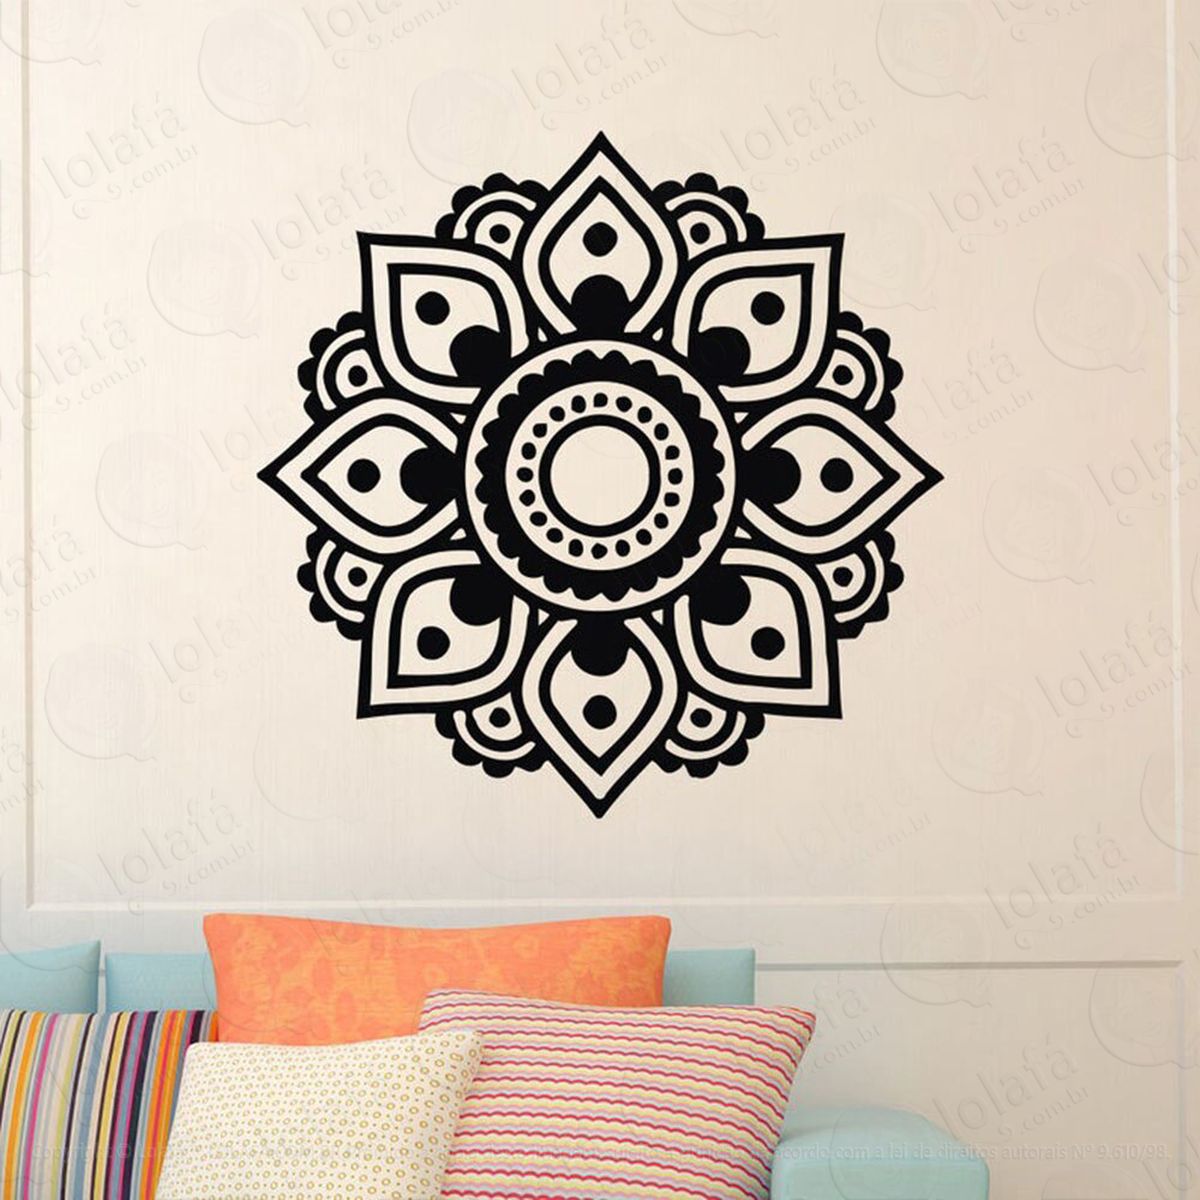 mandala seja felicidade adesivo de parede decorativo para casa, quarto, sala e vidro - mod:338